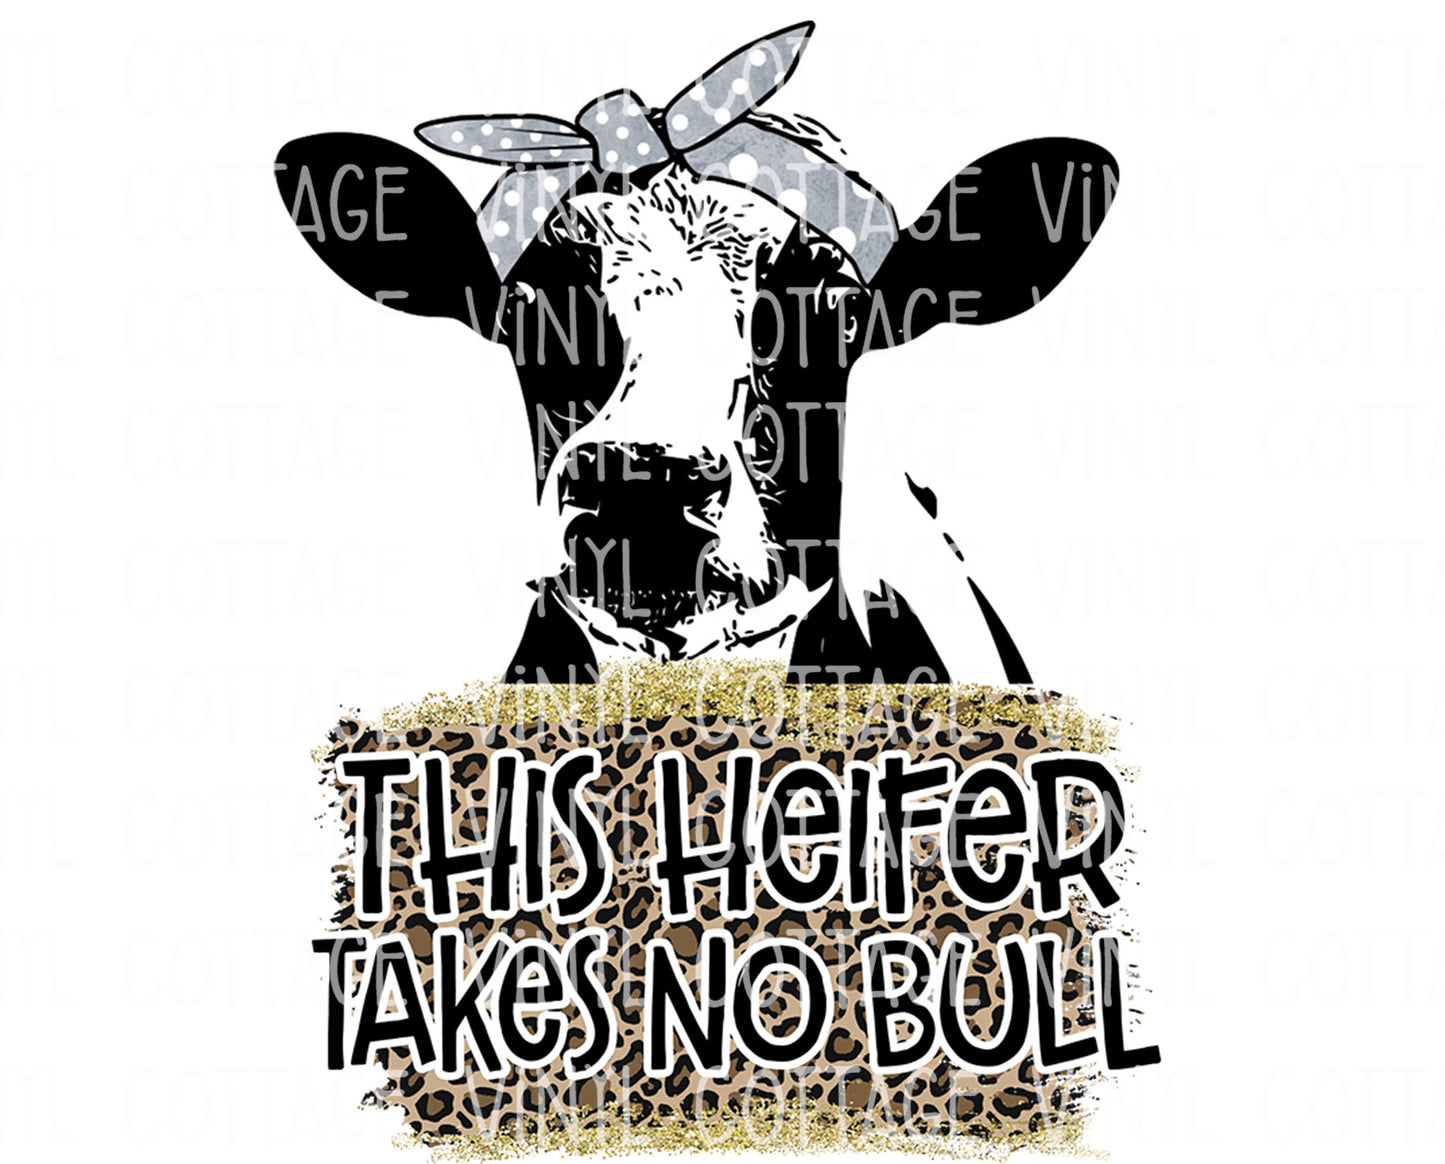 TR831 This Heifer Takes No Bull